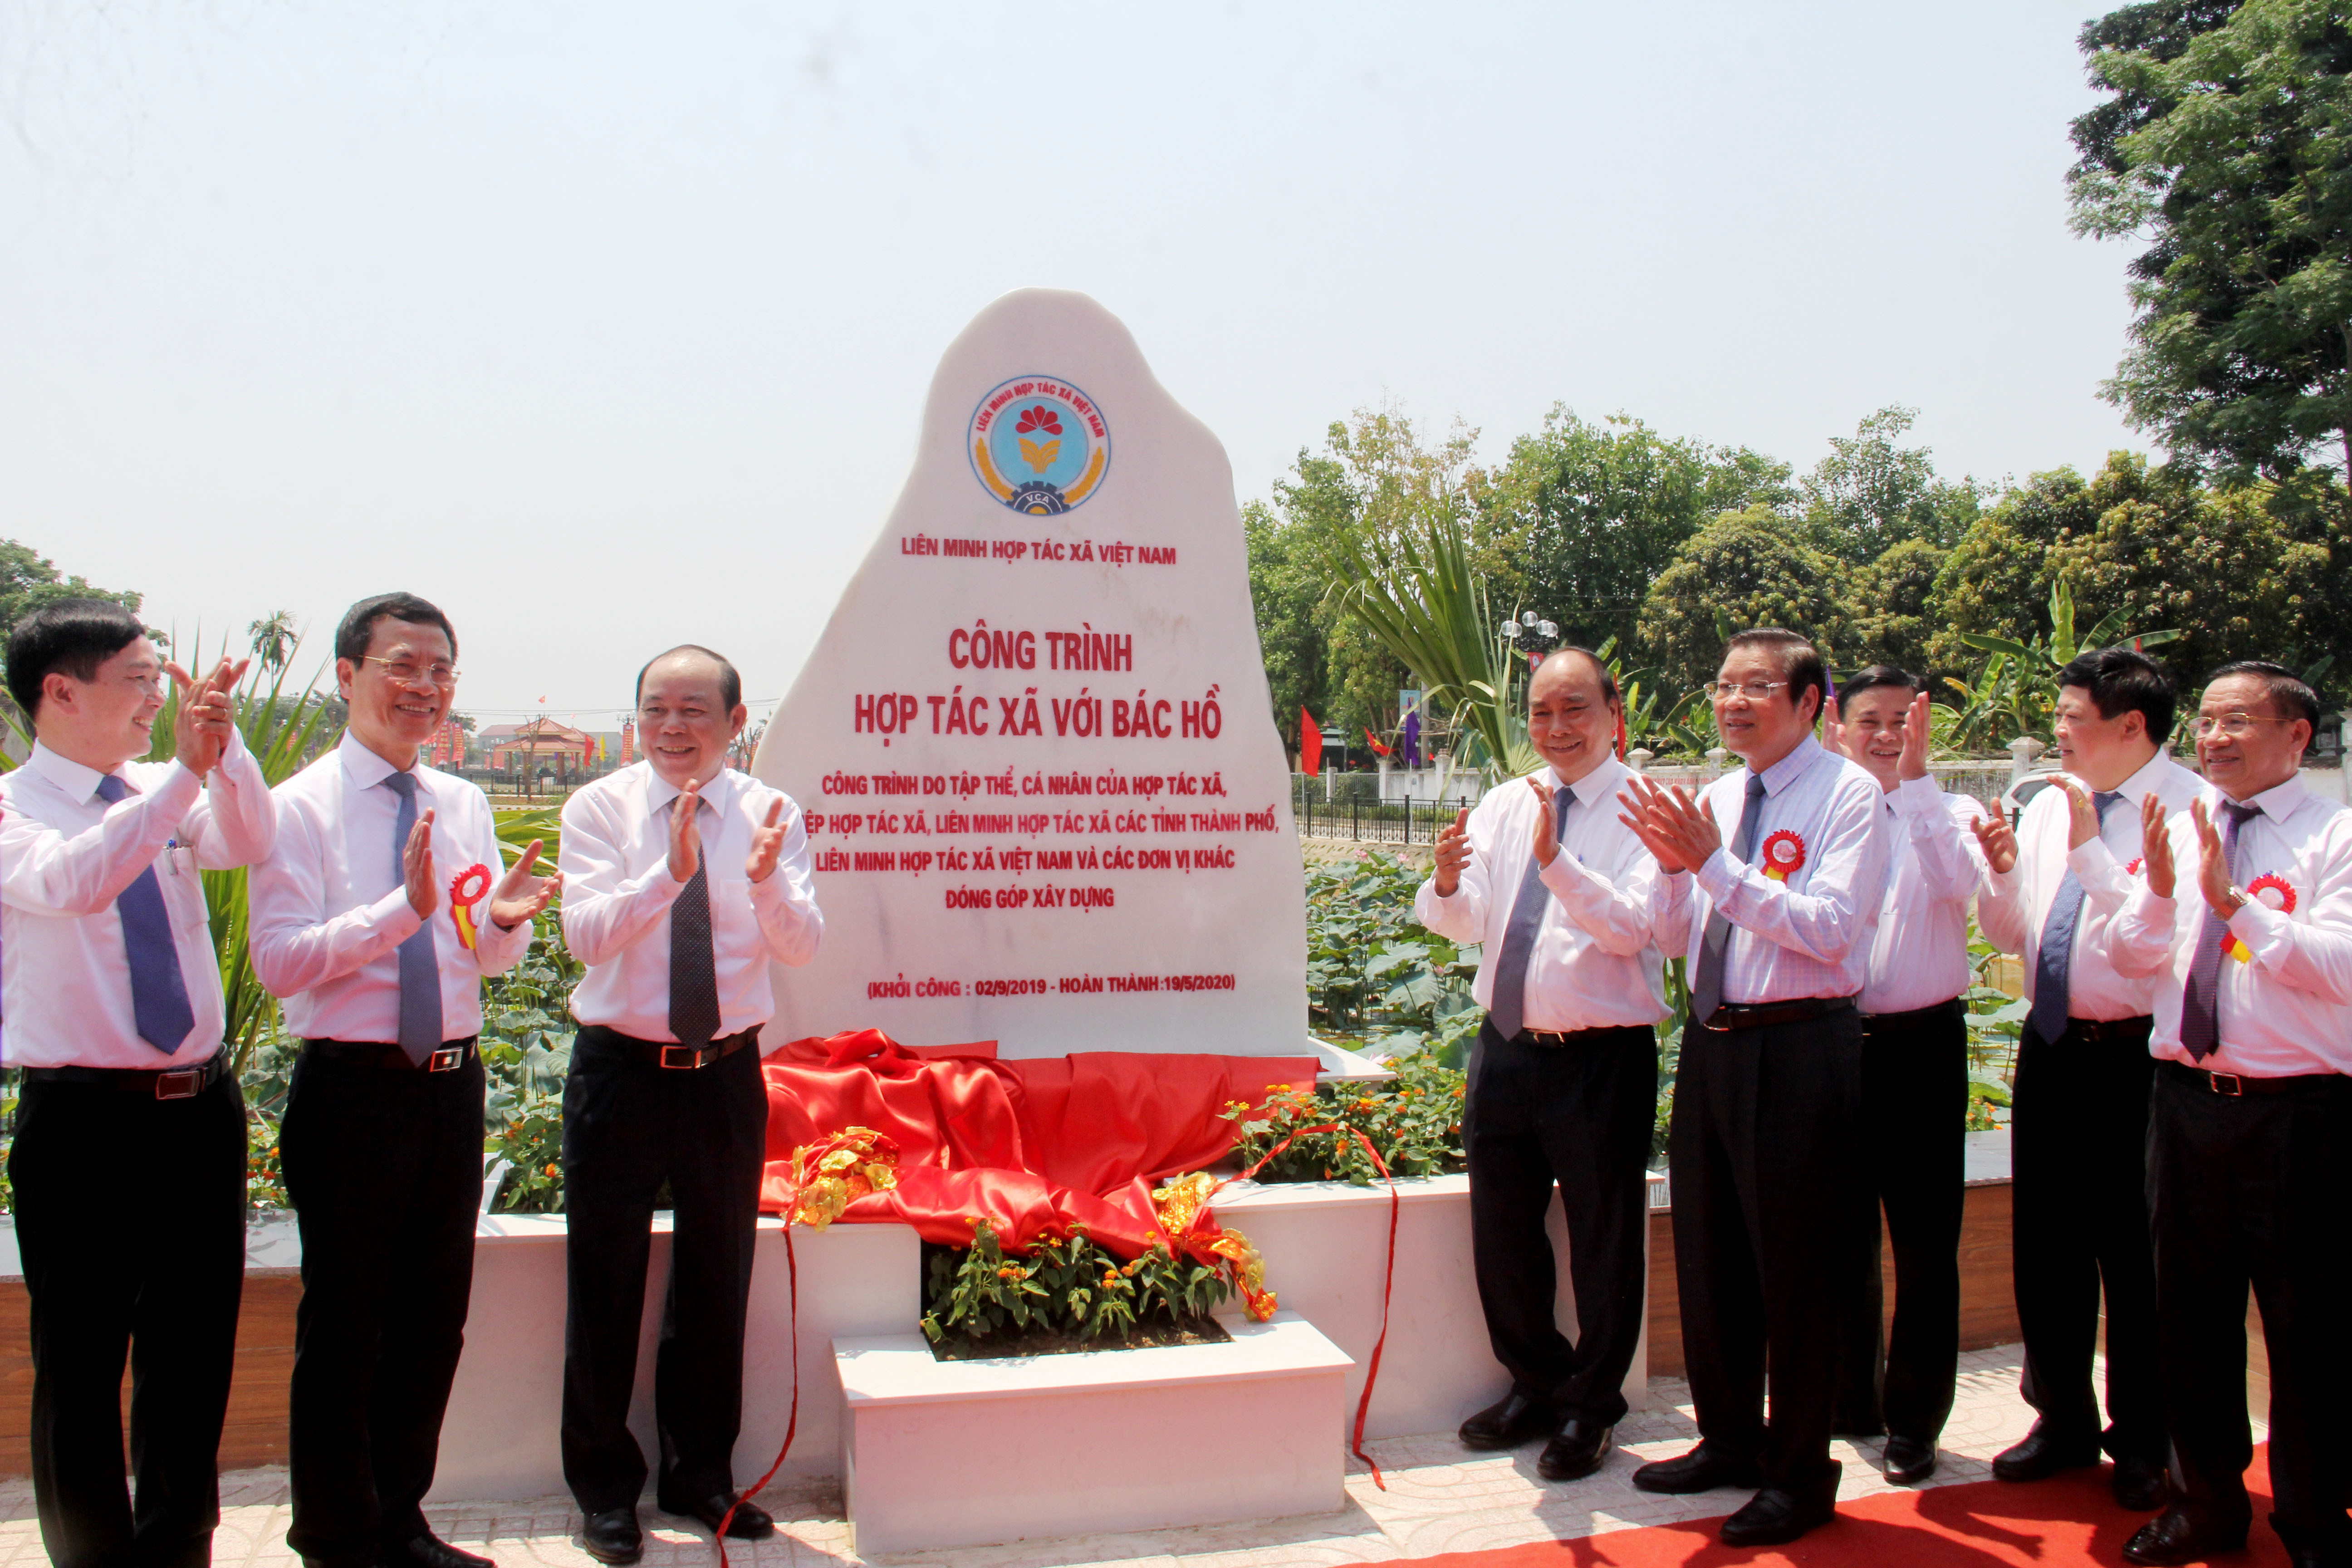 Thủ tướng Nguyễn Xuân Phúc gắn biển công trình chào mừng 130 năm Ngày sinh Chủ tịch Hồ Chí Minh. Ảnh: Phạm Bằng